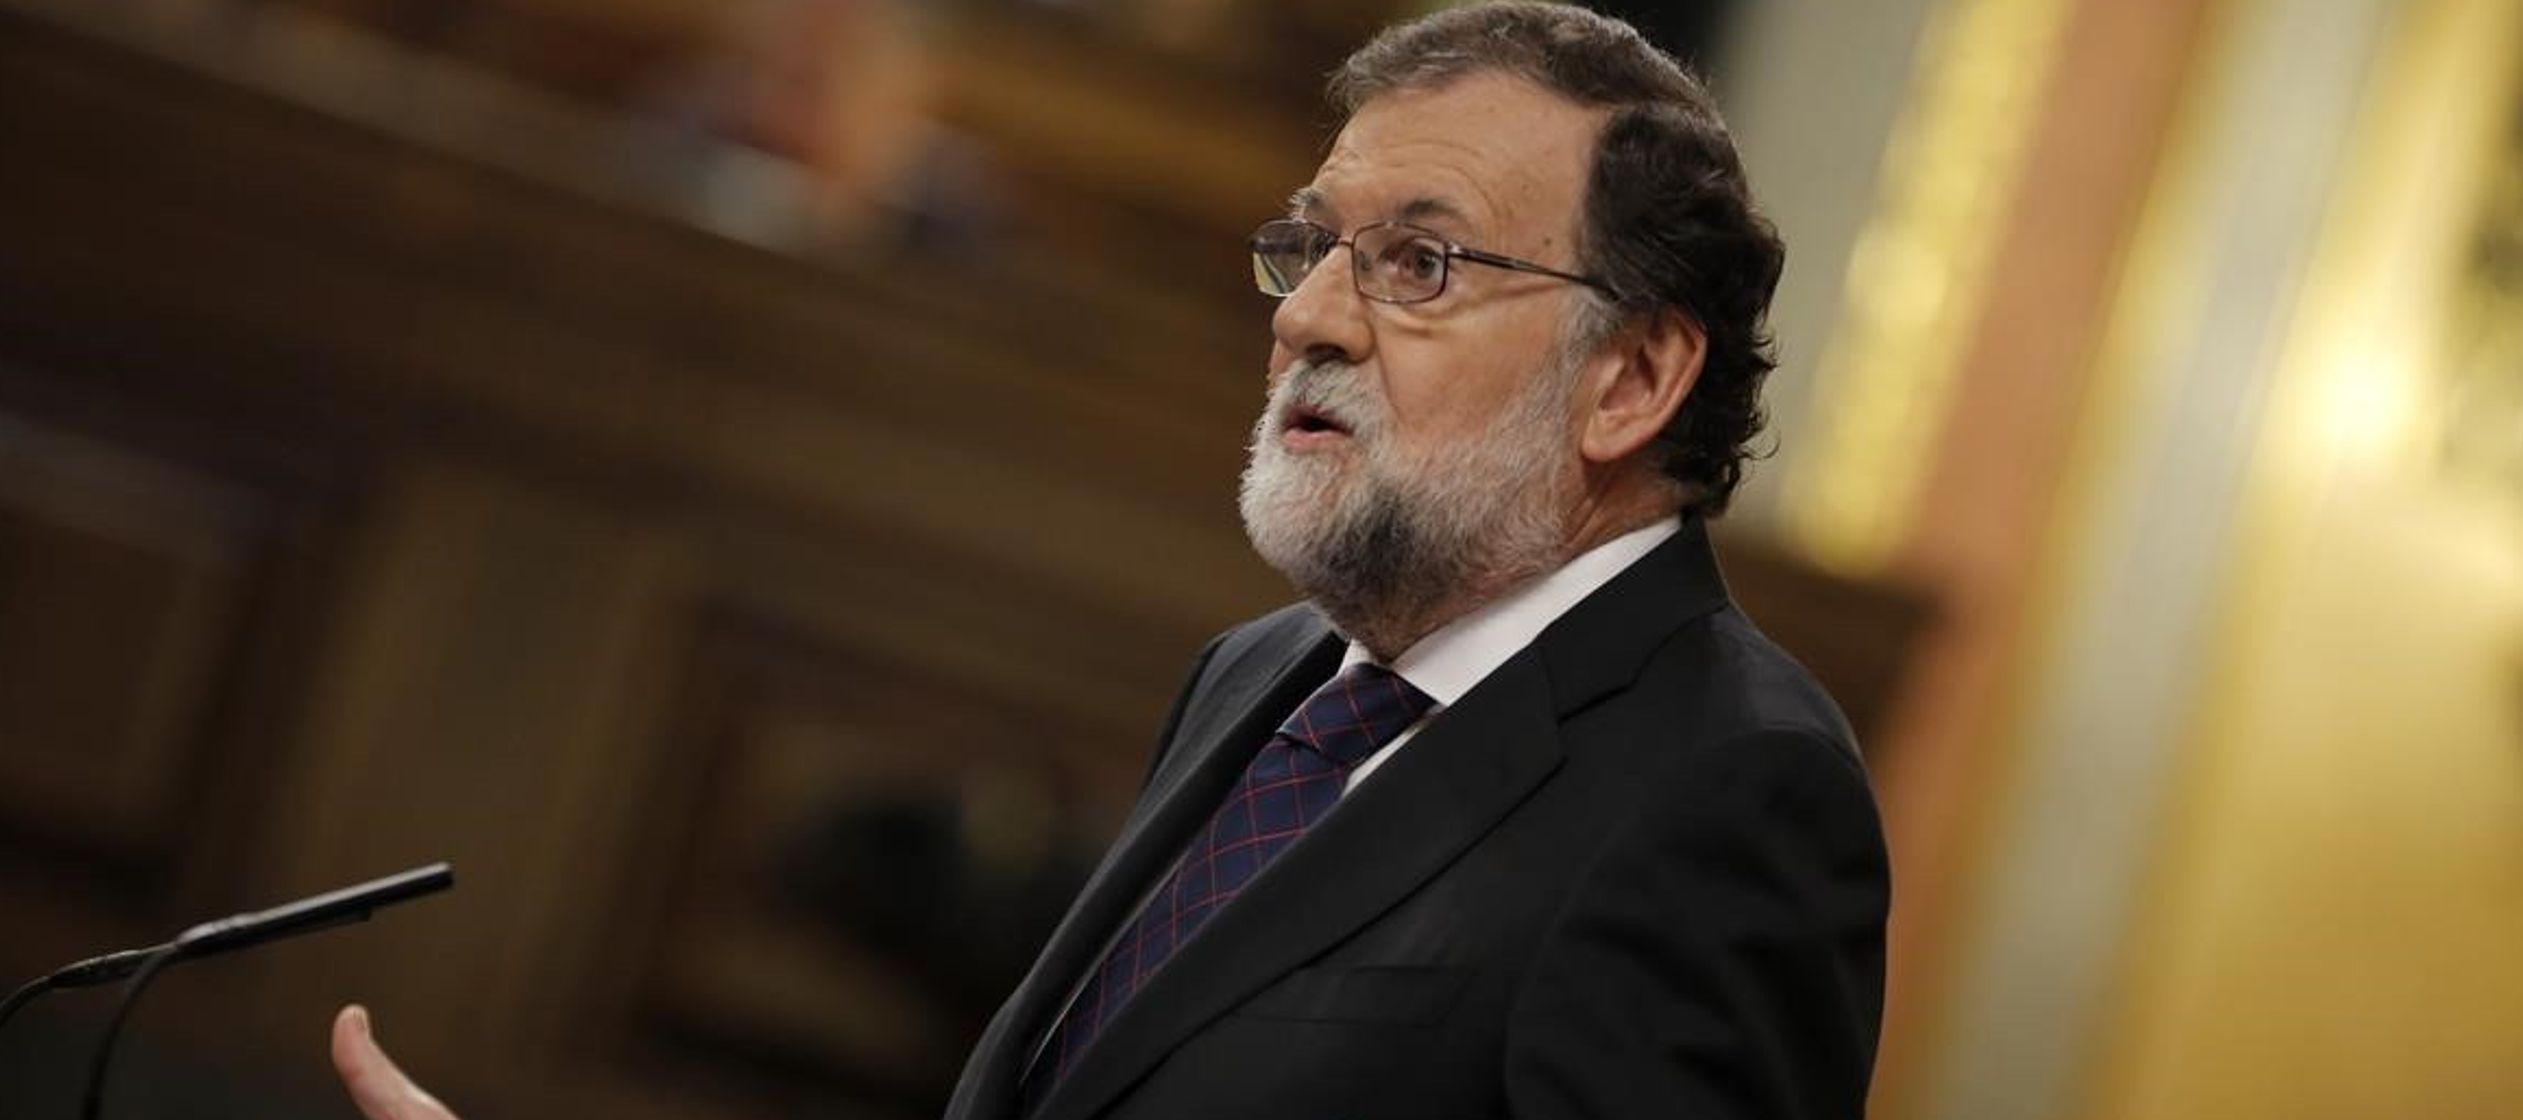 Desde su llegada al Congreso hasta 2004 fue diputado por la provincia gallega de Pontevedra...